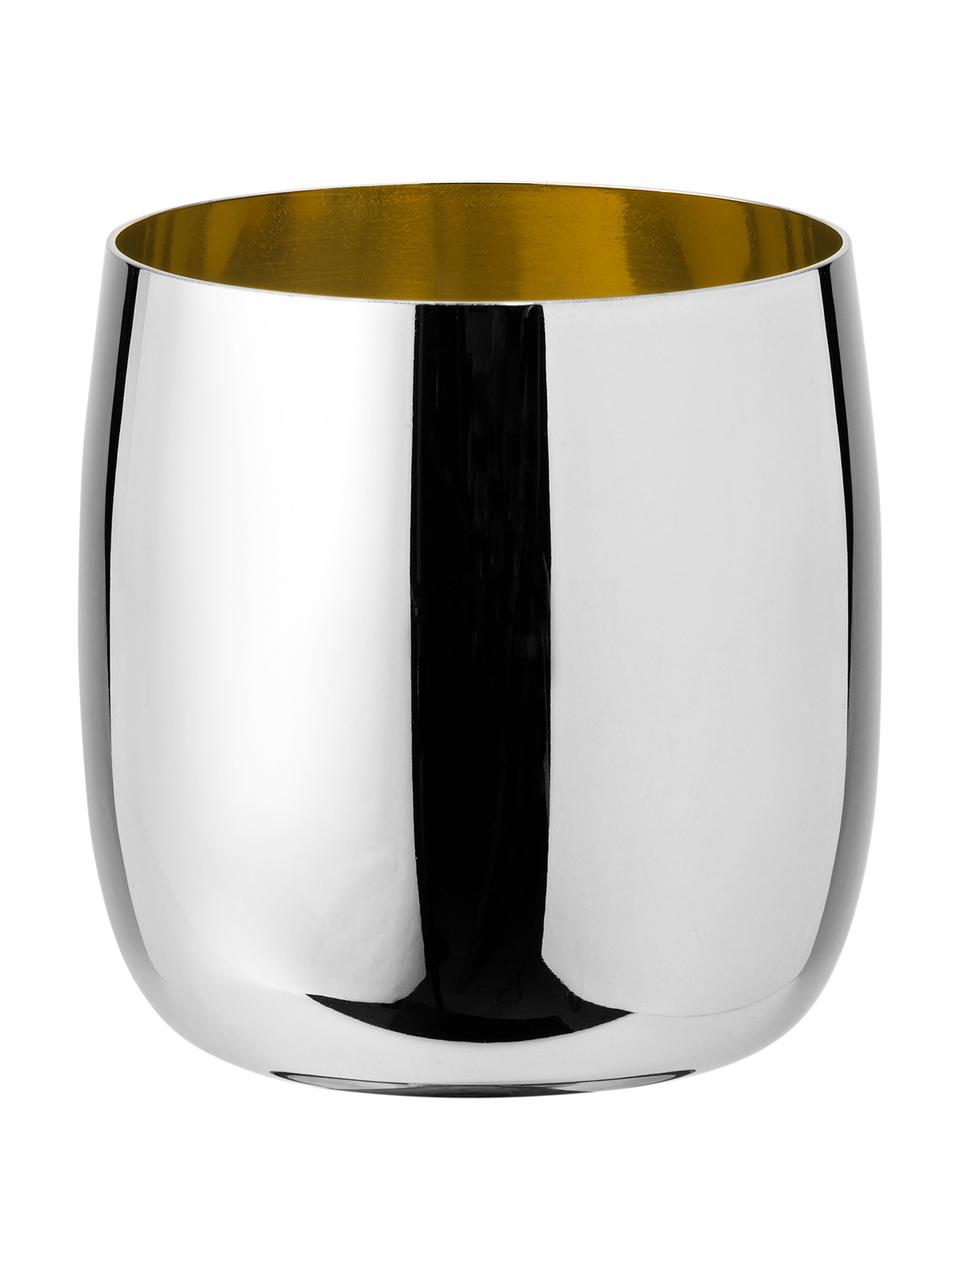 Design wijnbeker Foster, Binnenkant: edelstaal met goudkleurig, Buitenzijde: hoogglanzend edelstaalkleurig. Binnenzijde: goudkleurig, 200 ml